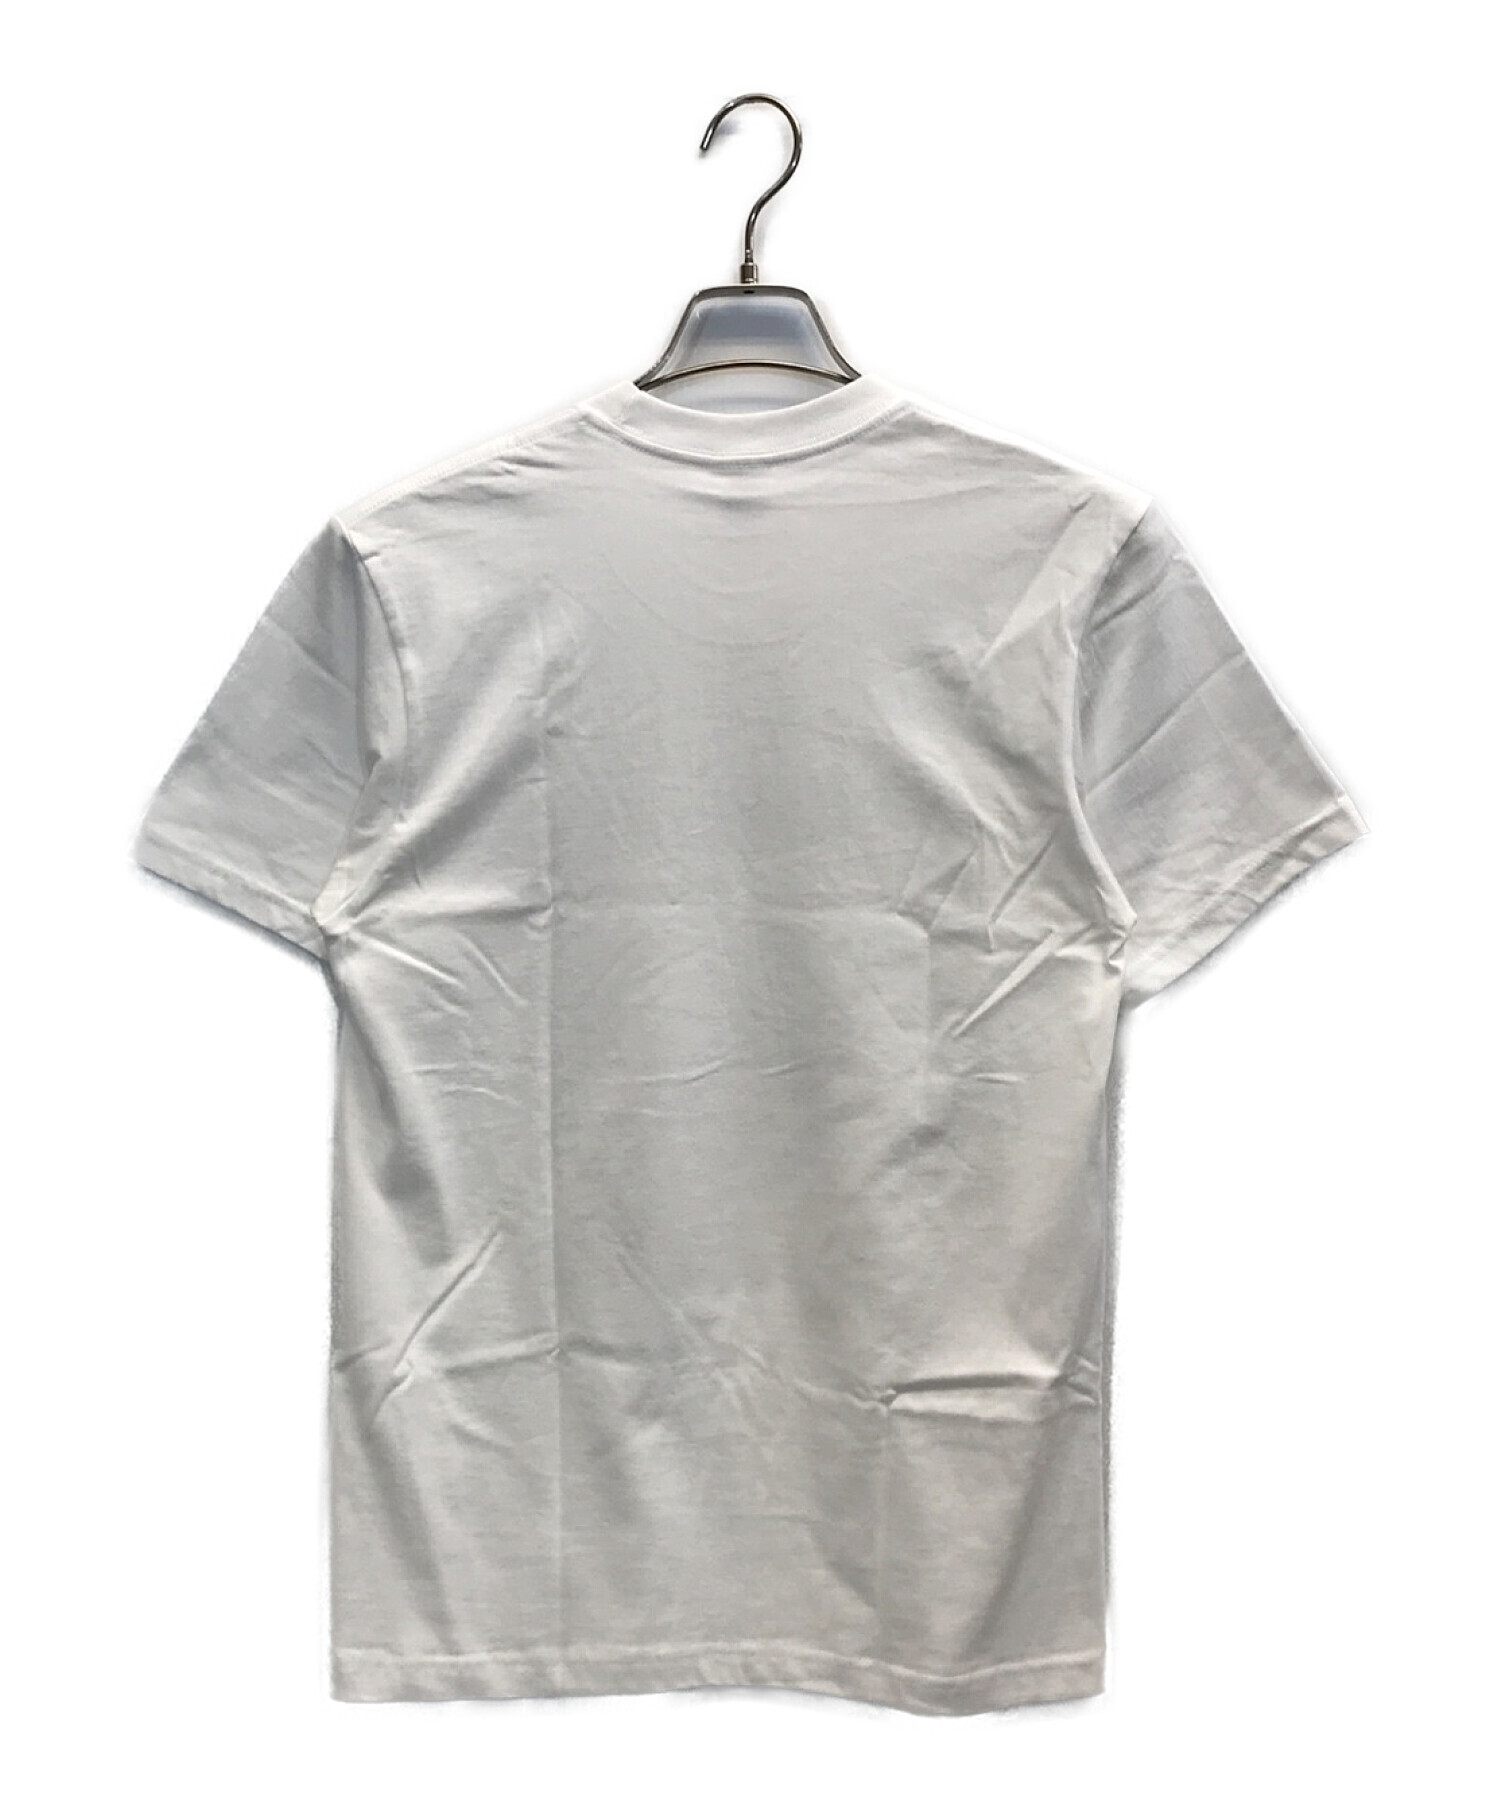 SUPREME (シュプリーム) 18AW Still Life Tee スティルライフTシャツ ホワイト サイズ:S 未使用品